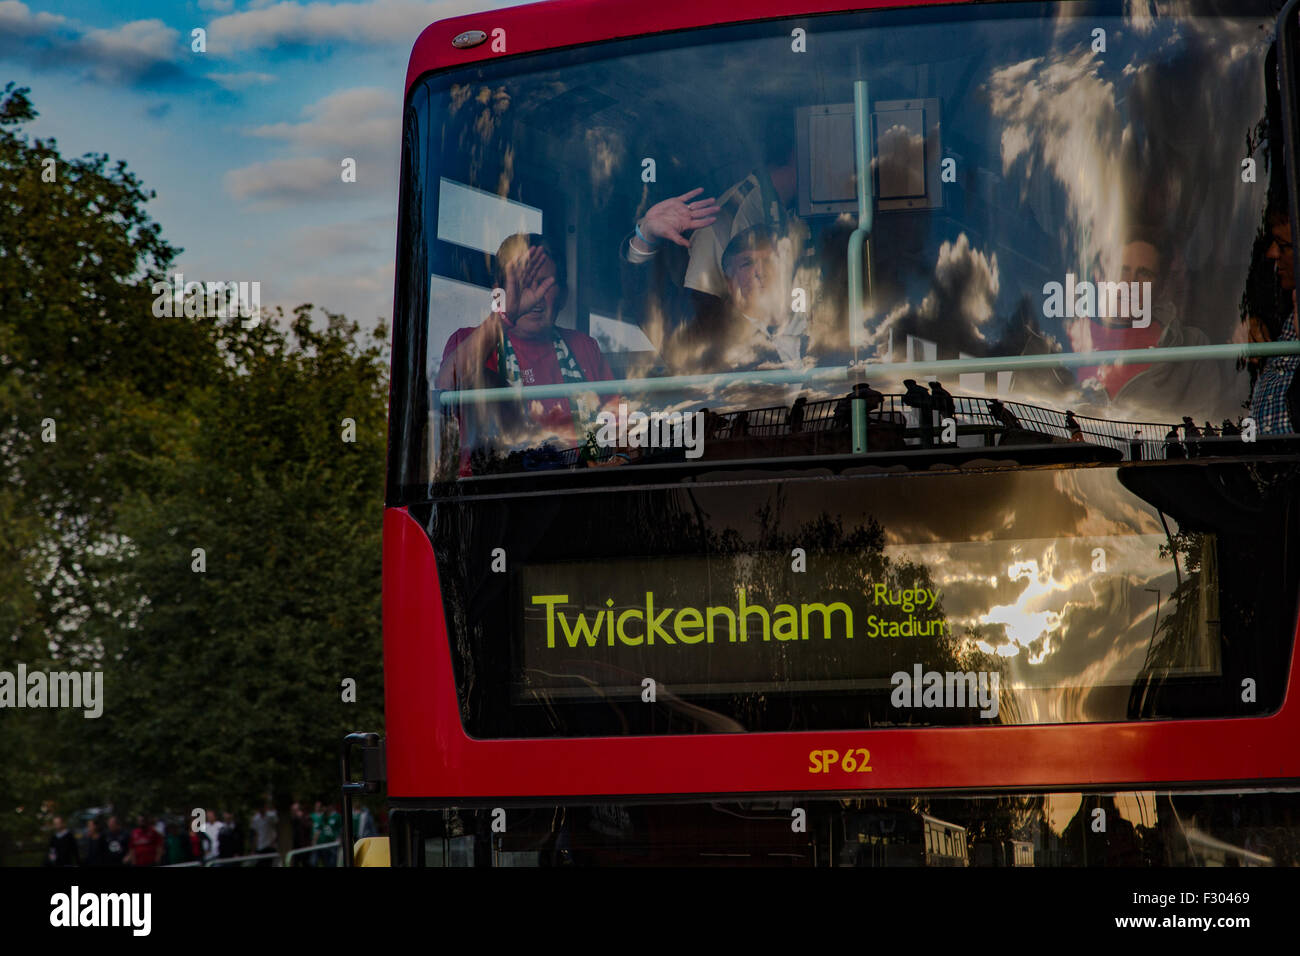 Richmond, London, UK. 26. Sep 2015. Walisischen Fans mit dem Bus nach Twickenham Stadium für England gegen Wales Rugby World Cup match Credit: auf Anblick Photographic/Alamy Live News Stockfoto